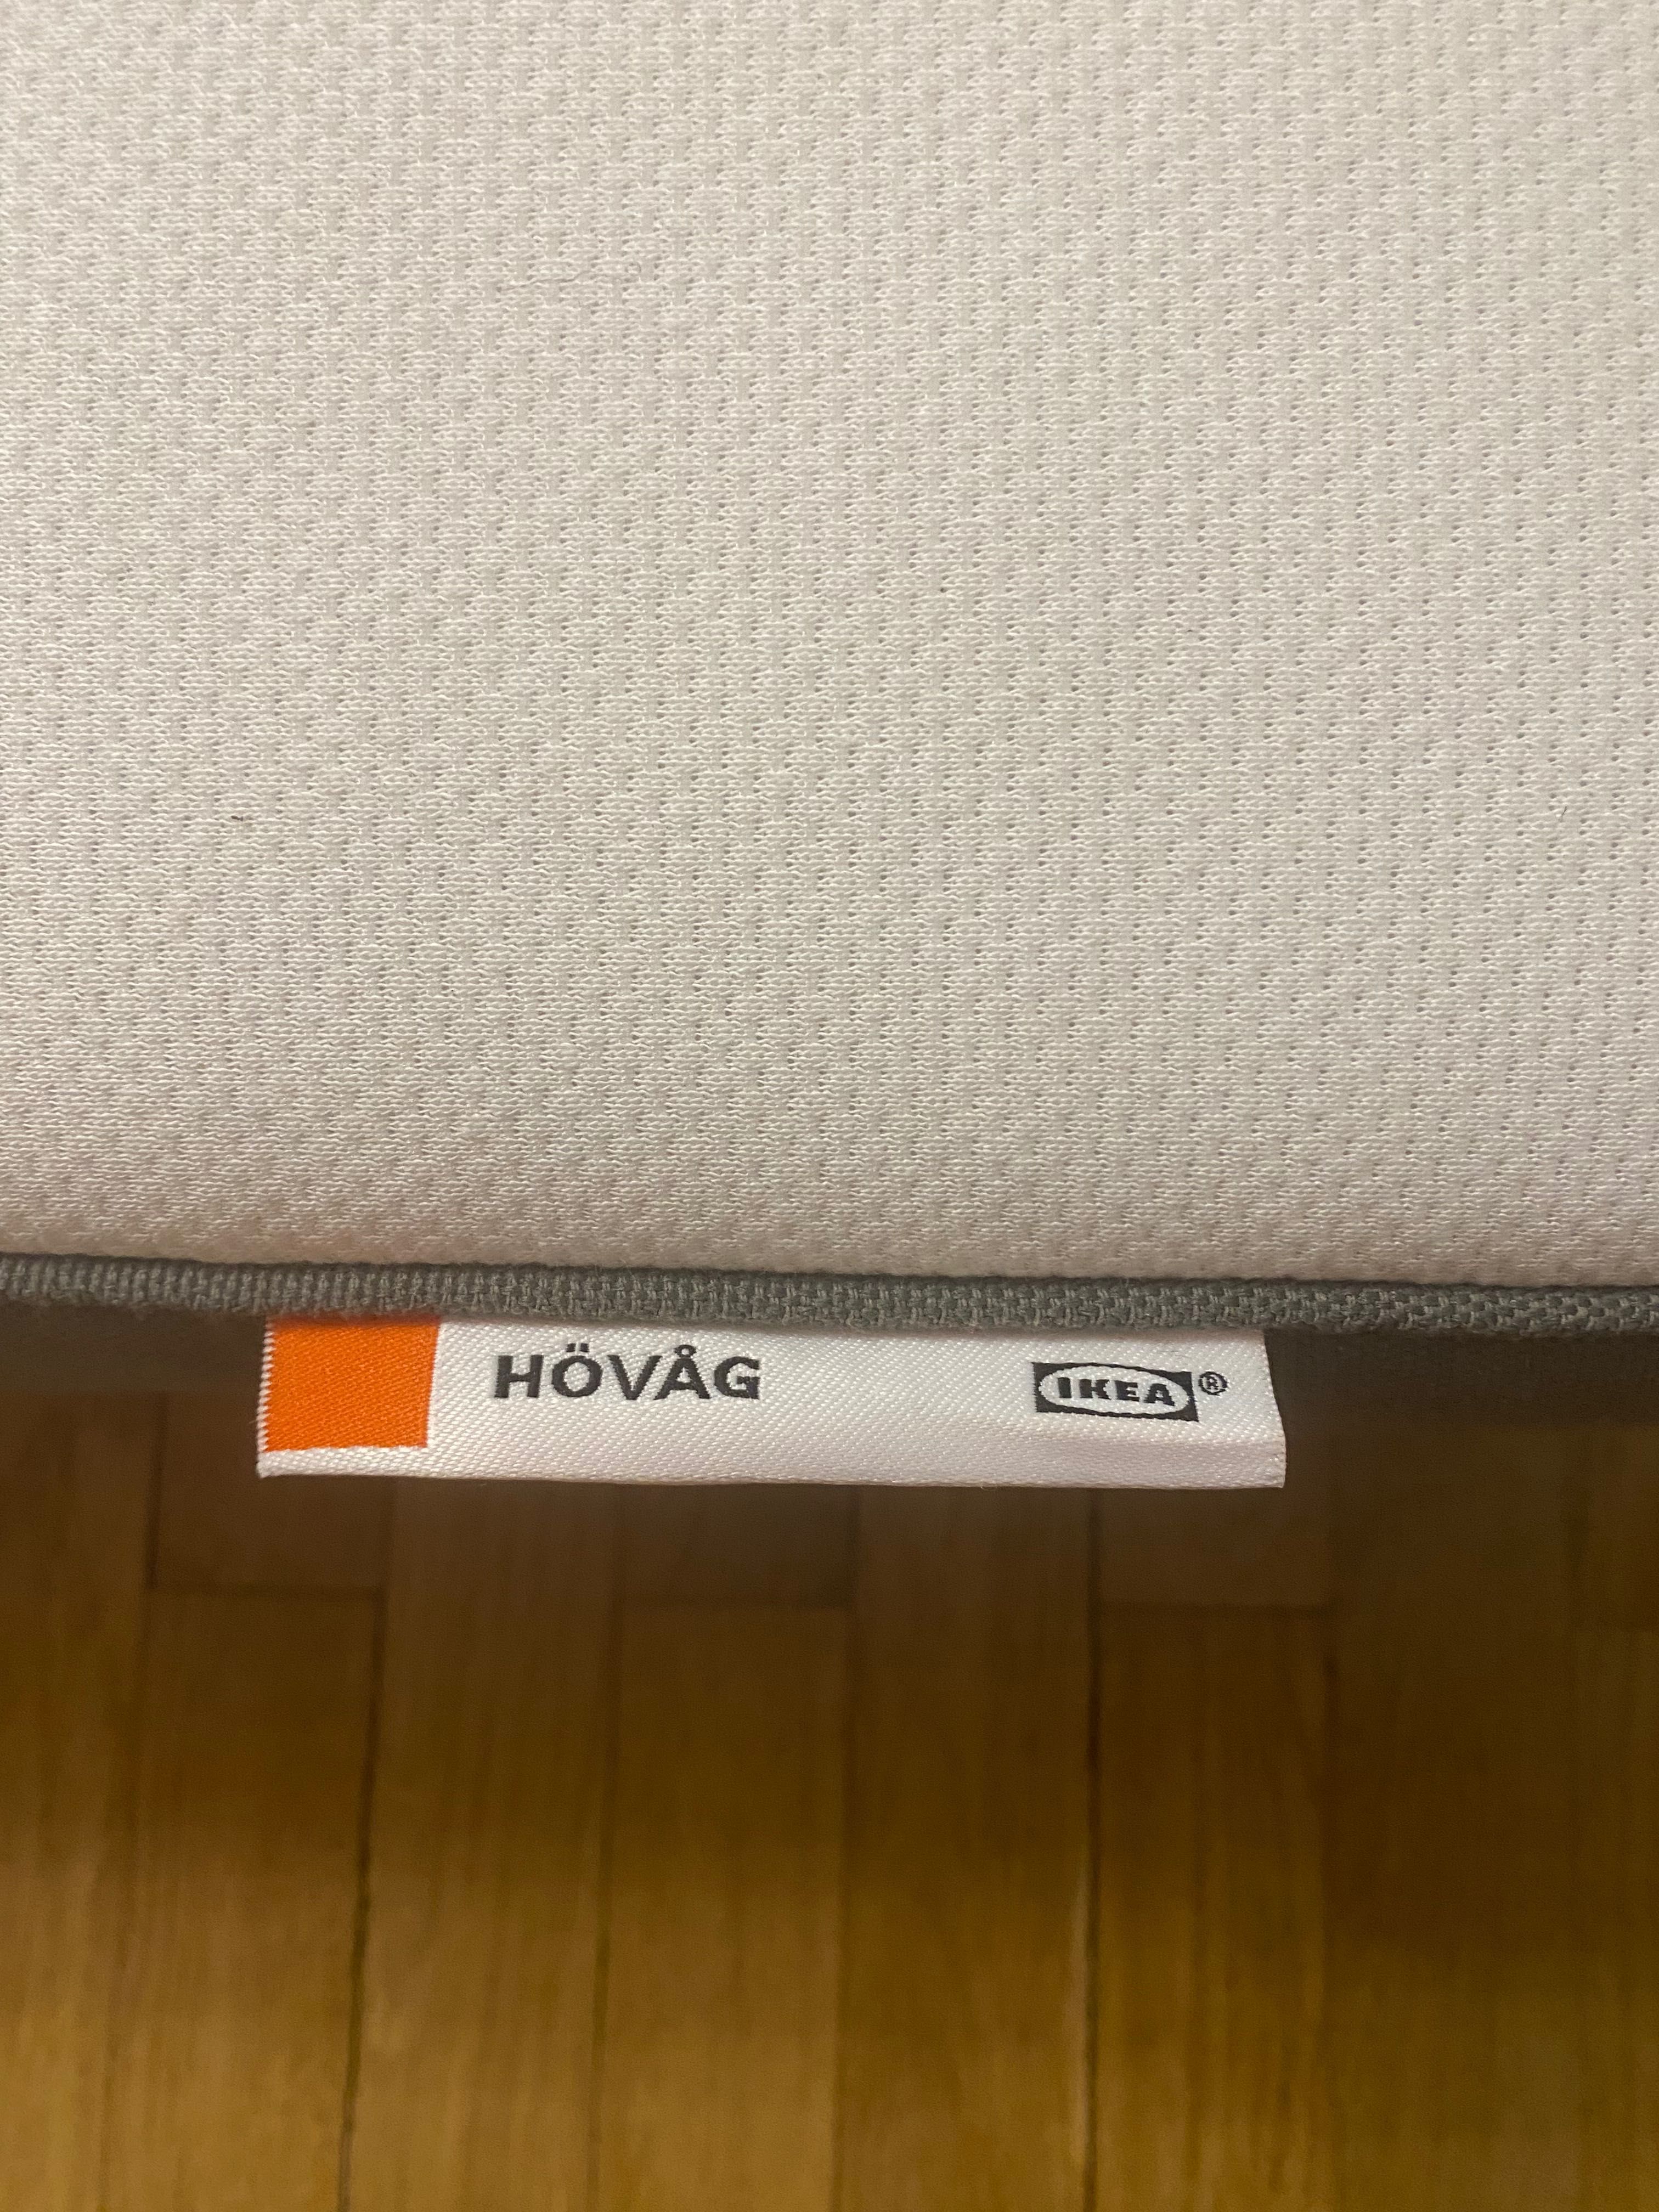 IKEA Матрас HOVAG  ортопедический, односпальный.